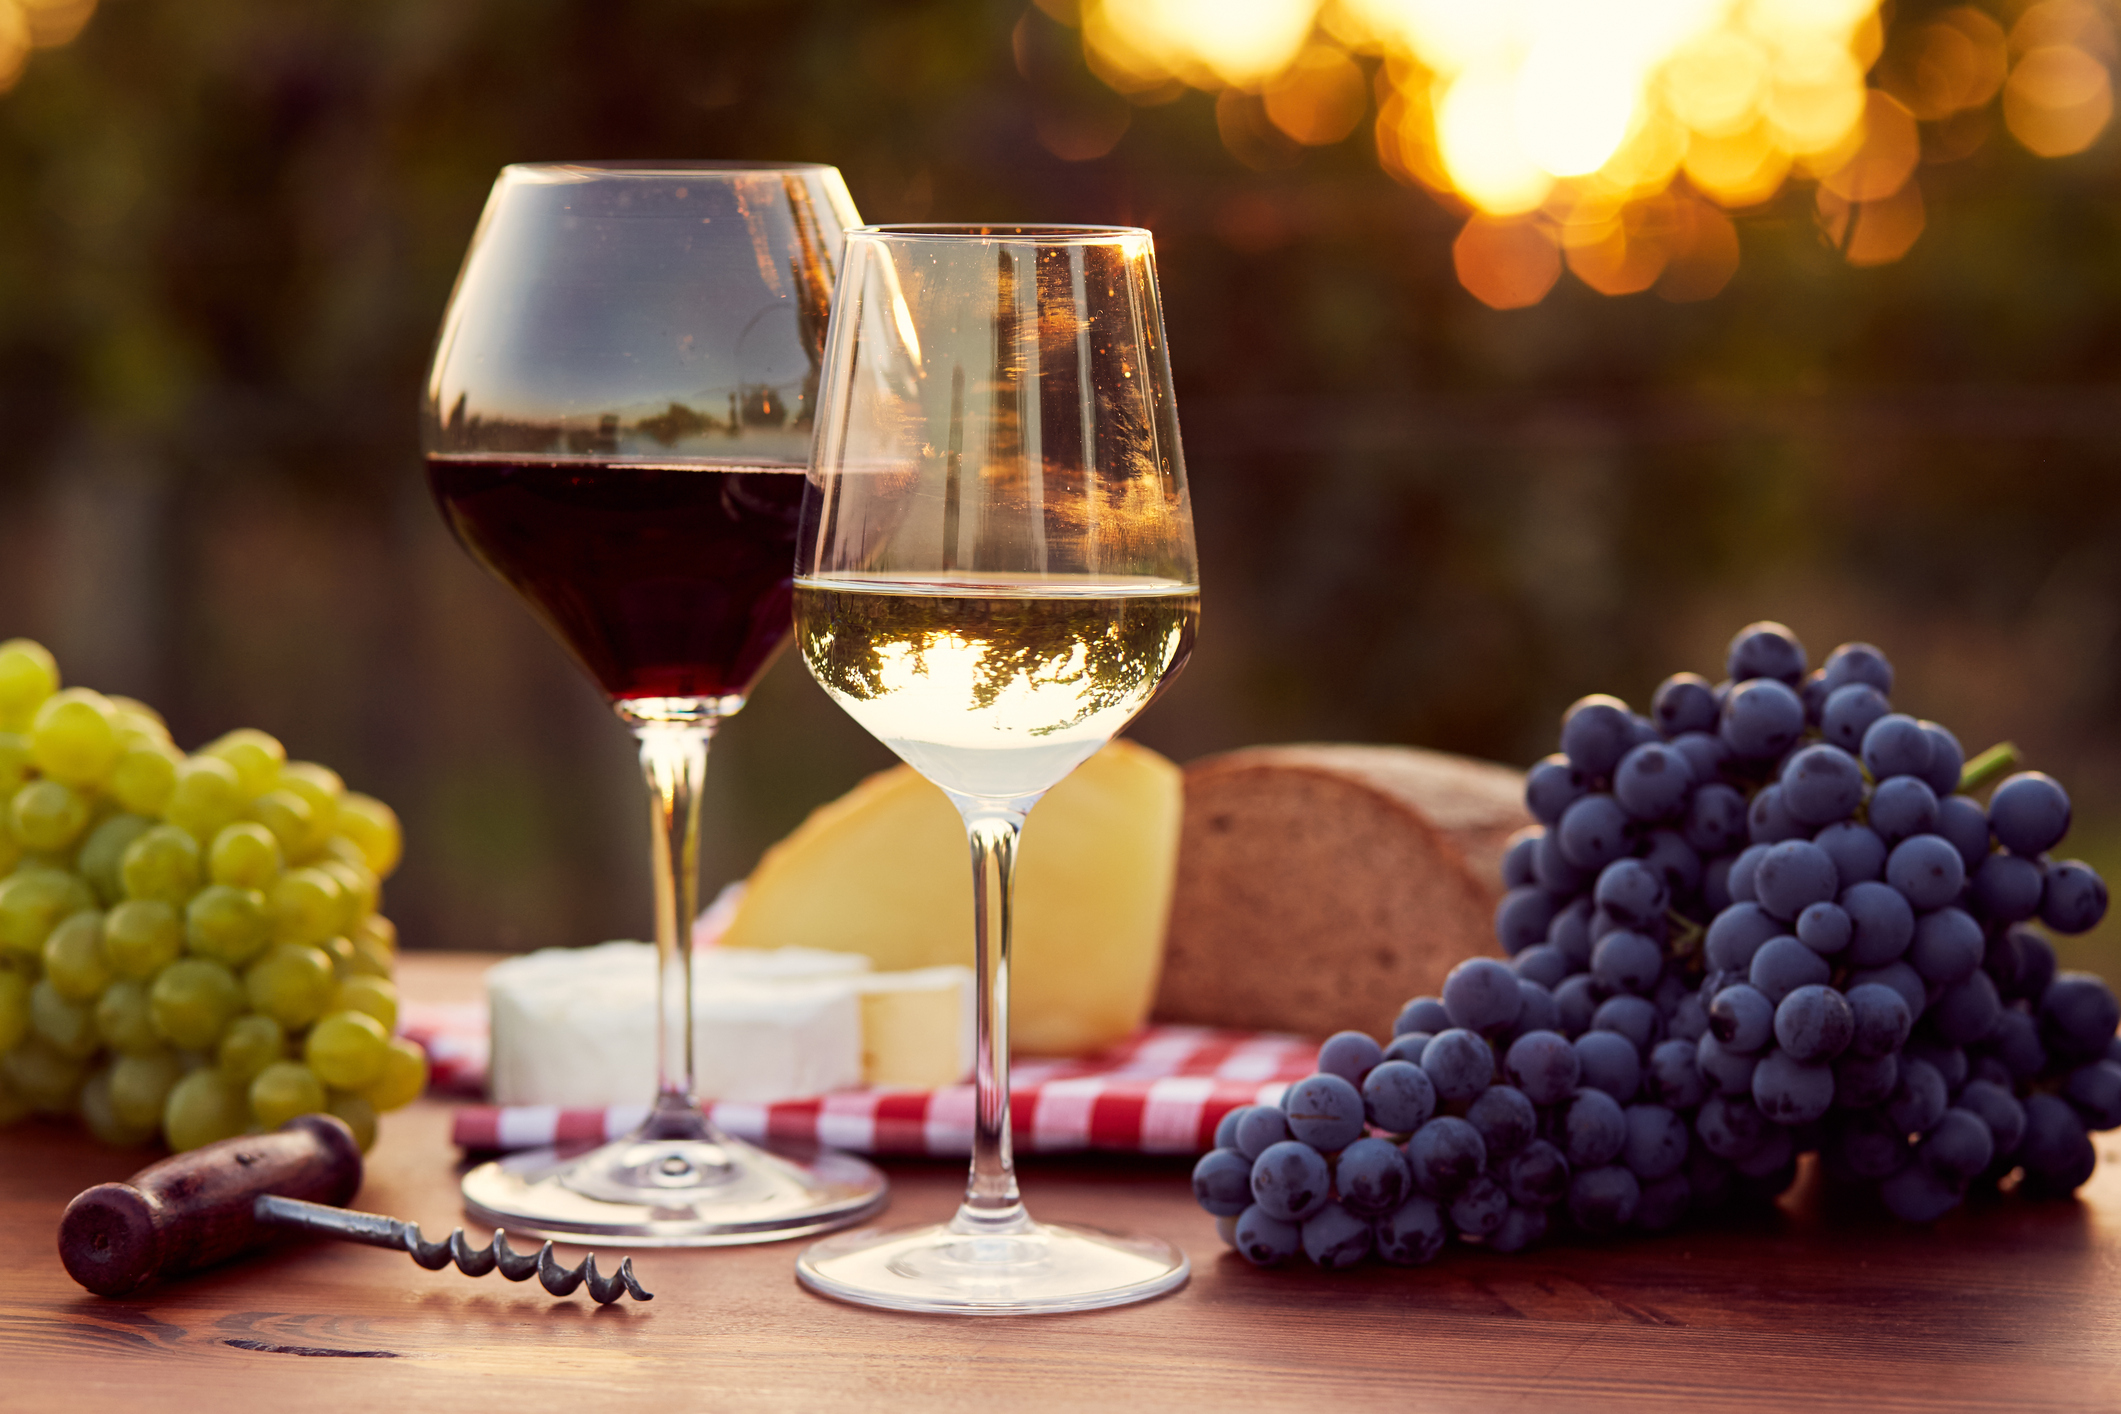 Не всяко вино помага за доброто ни здравословно състояние. Червеното вино e всеизвестно с антиоксидантните си свойства, които защитават сърцето. Бялото вино съдържа тези полезни вещества в пъти по-малко. Колкото и полезно да е обаче виното, не преминавайте границата от 1-2 чаши дневно.<br />
 